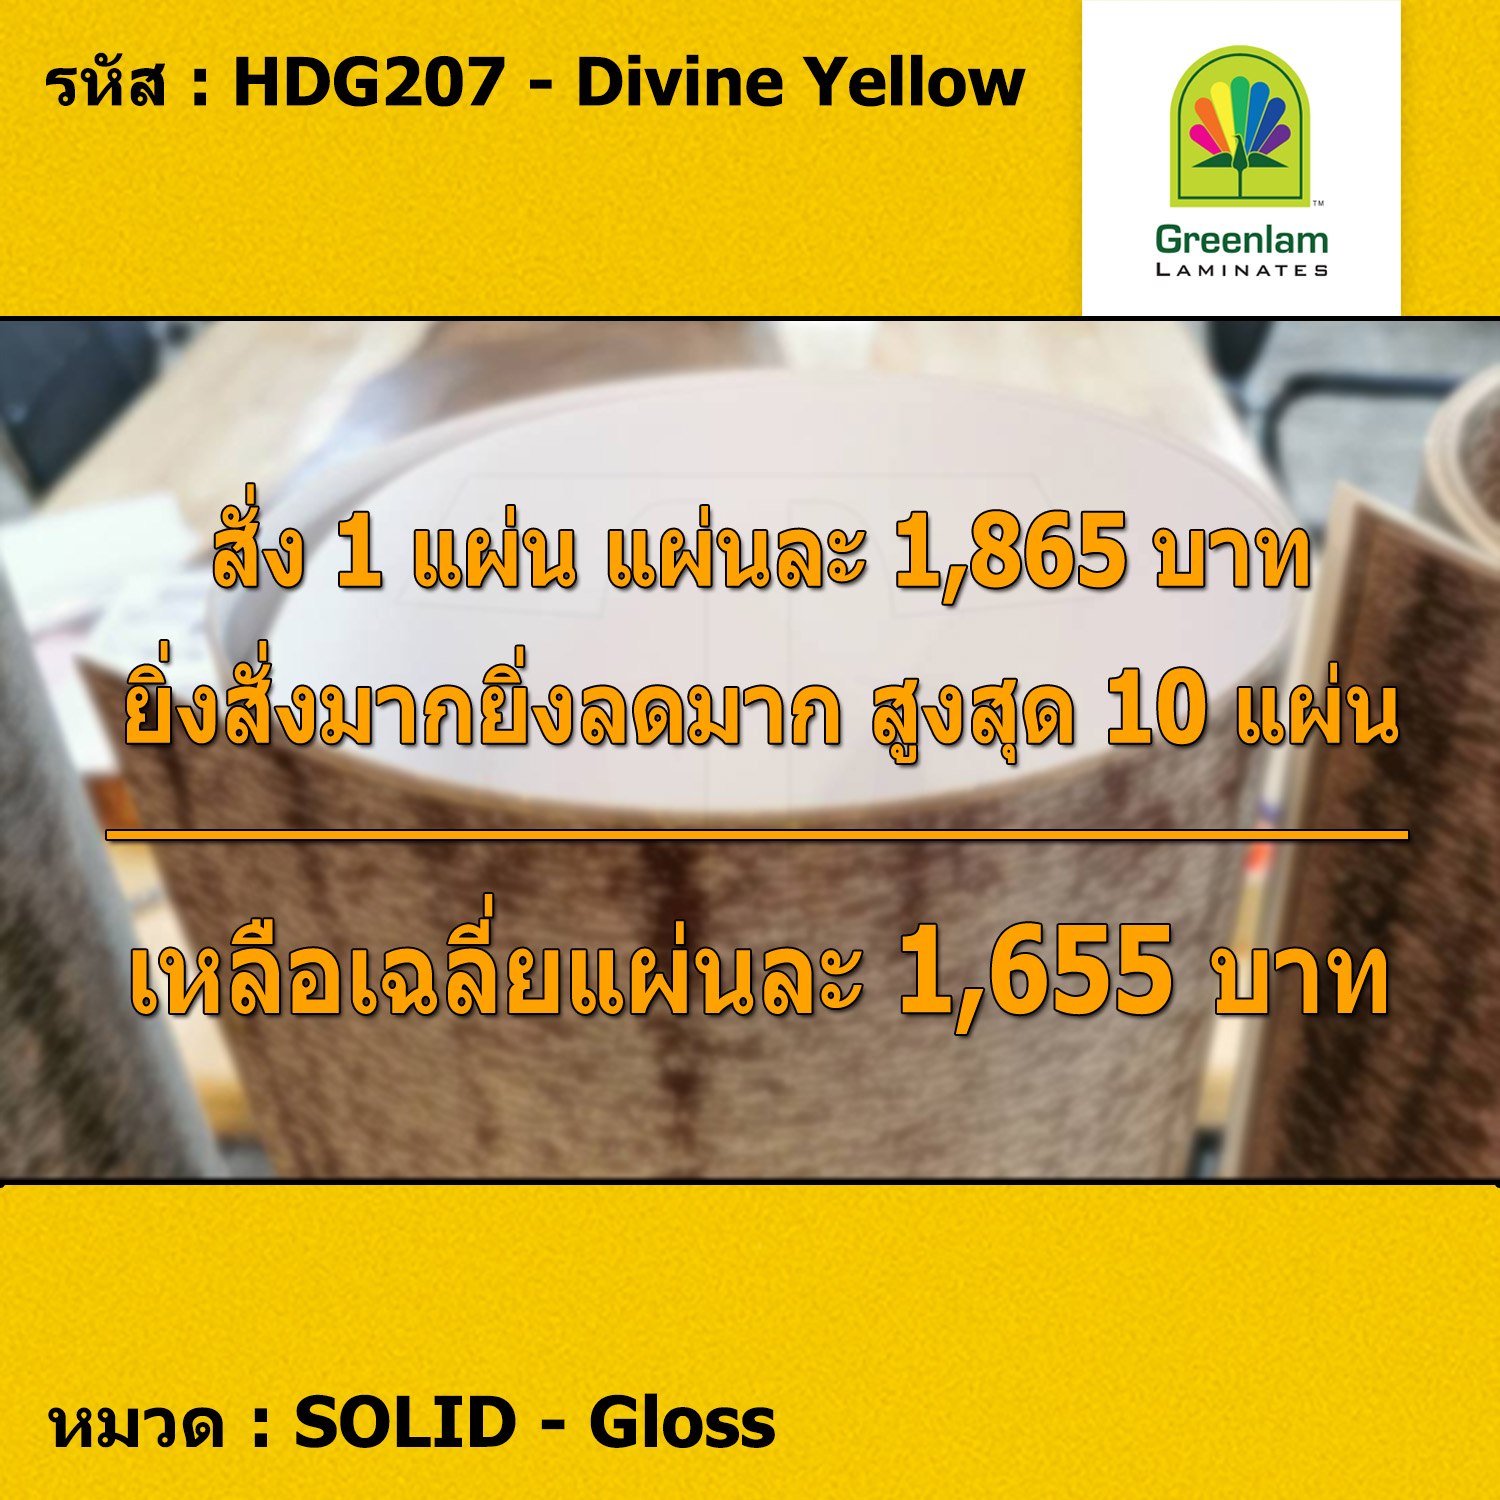 แผ่นโฟเมก้า แผ่นลามิเนต ยี่ห้อ Greenlam สีเหลือง รหัส HDG207 Divine Yellow พื้นผิวลาย Gloss ขนาด 1220 x 2440 มม. หนา 1.00 มม. ใช้สำหรับงานตกแต่งภายใน งานปิดผิวเฟอร์นิเจอร์ ผนัง และอื่นๆ เพื่อเพิ่มความสวยงาม formica laminate HDG207